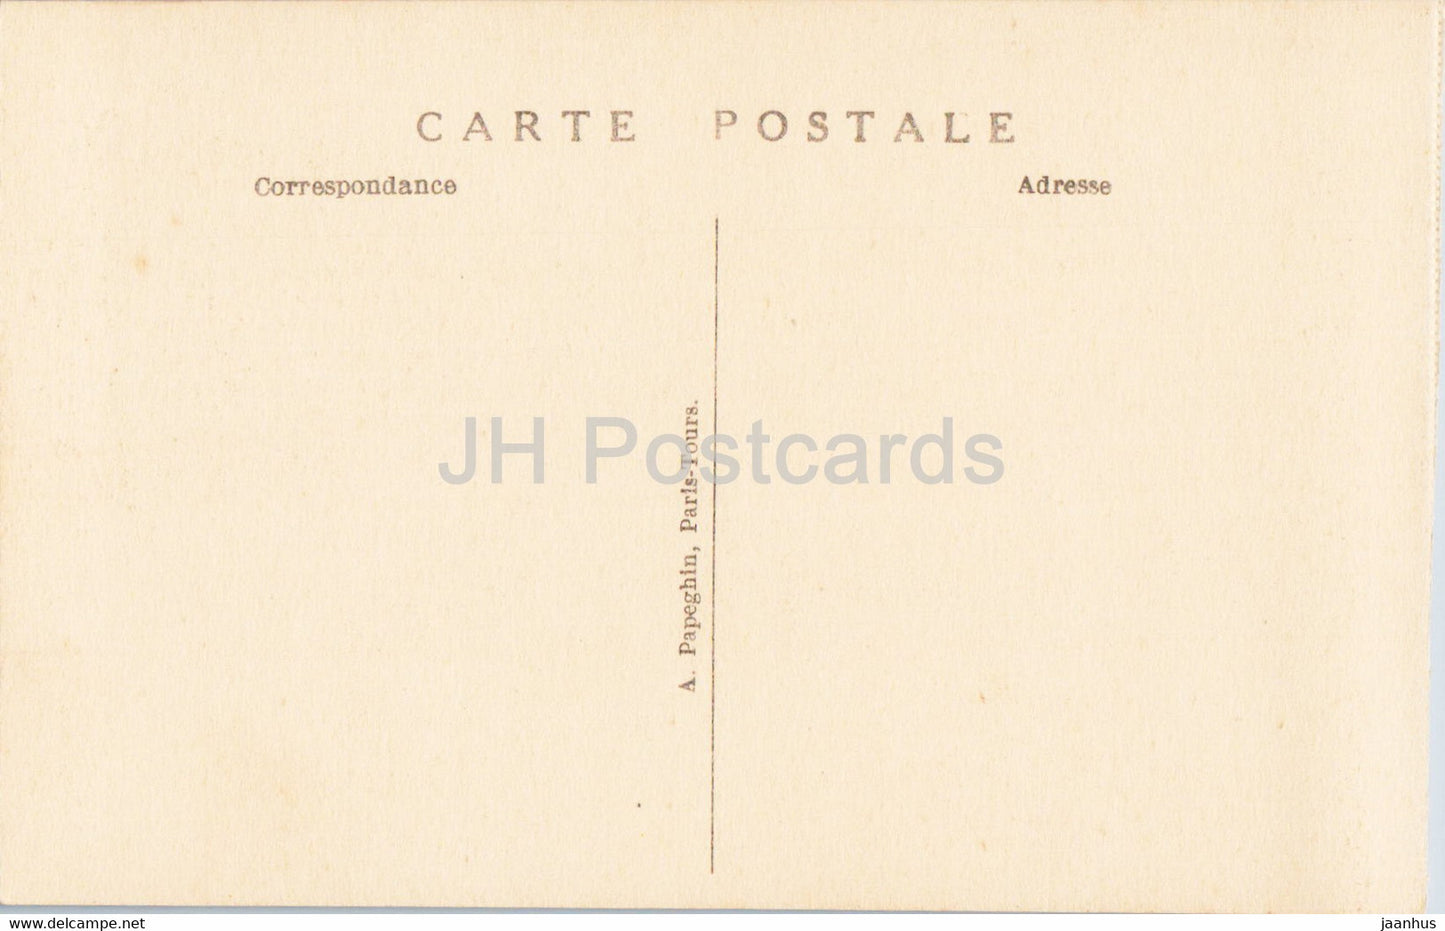 Versailles - Parterre d'Eau - Bassin du Nord - La Garonne - 24 - old postcard - France - unused